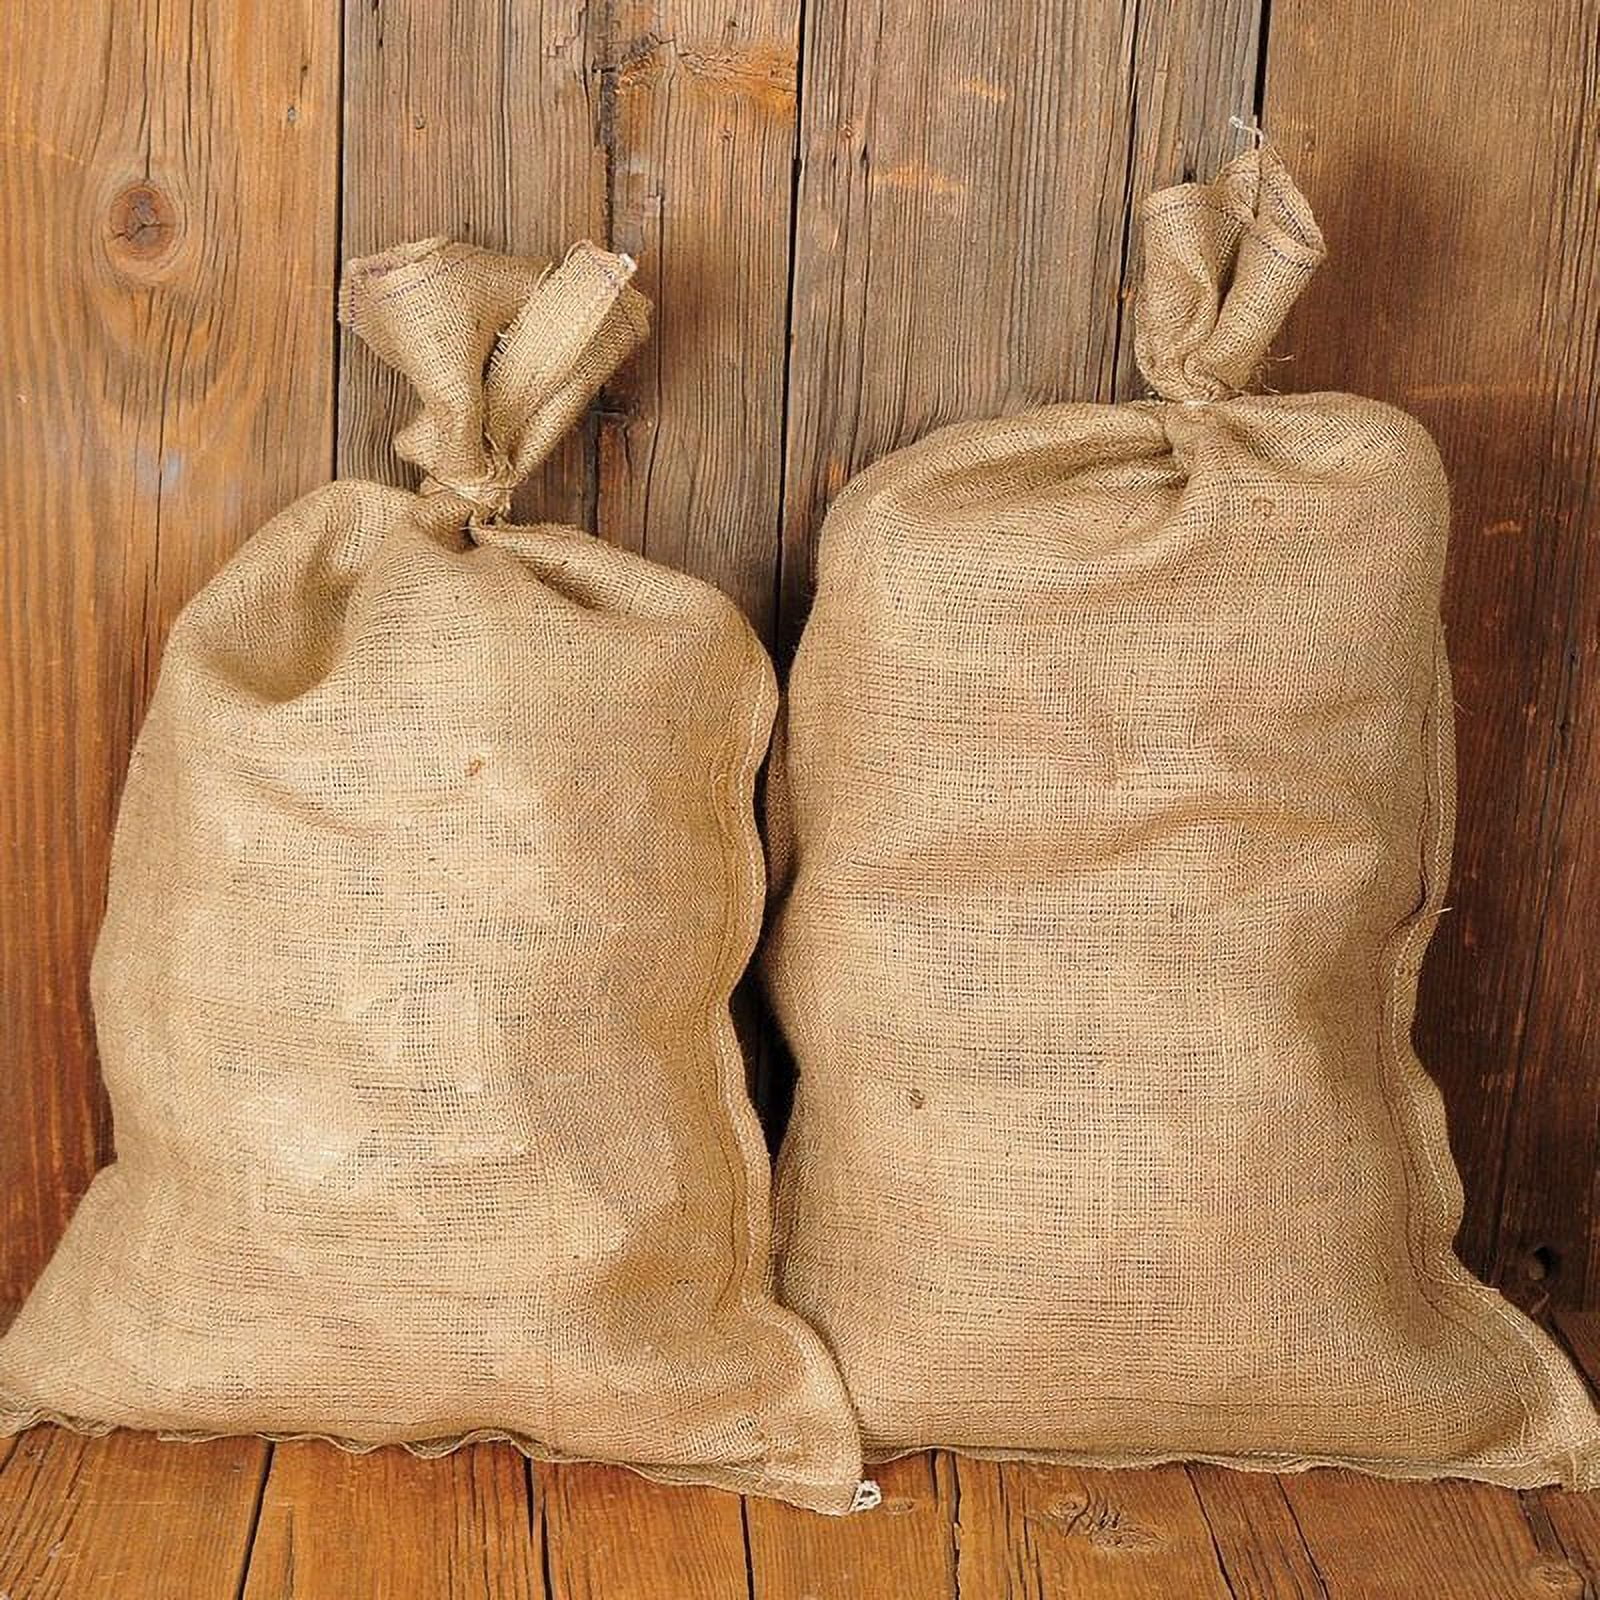 Large Burlap Bags, Burlap Feed Bags